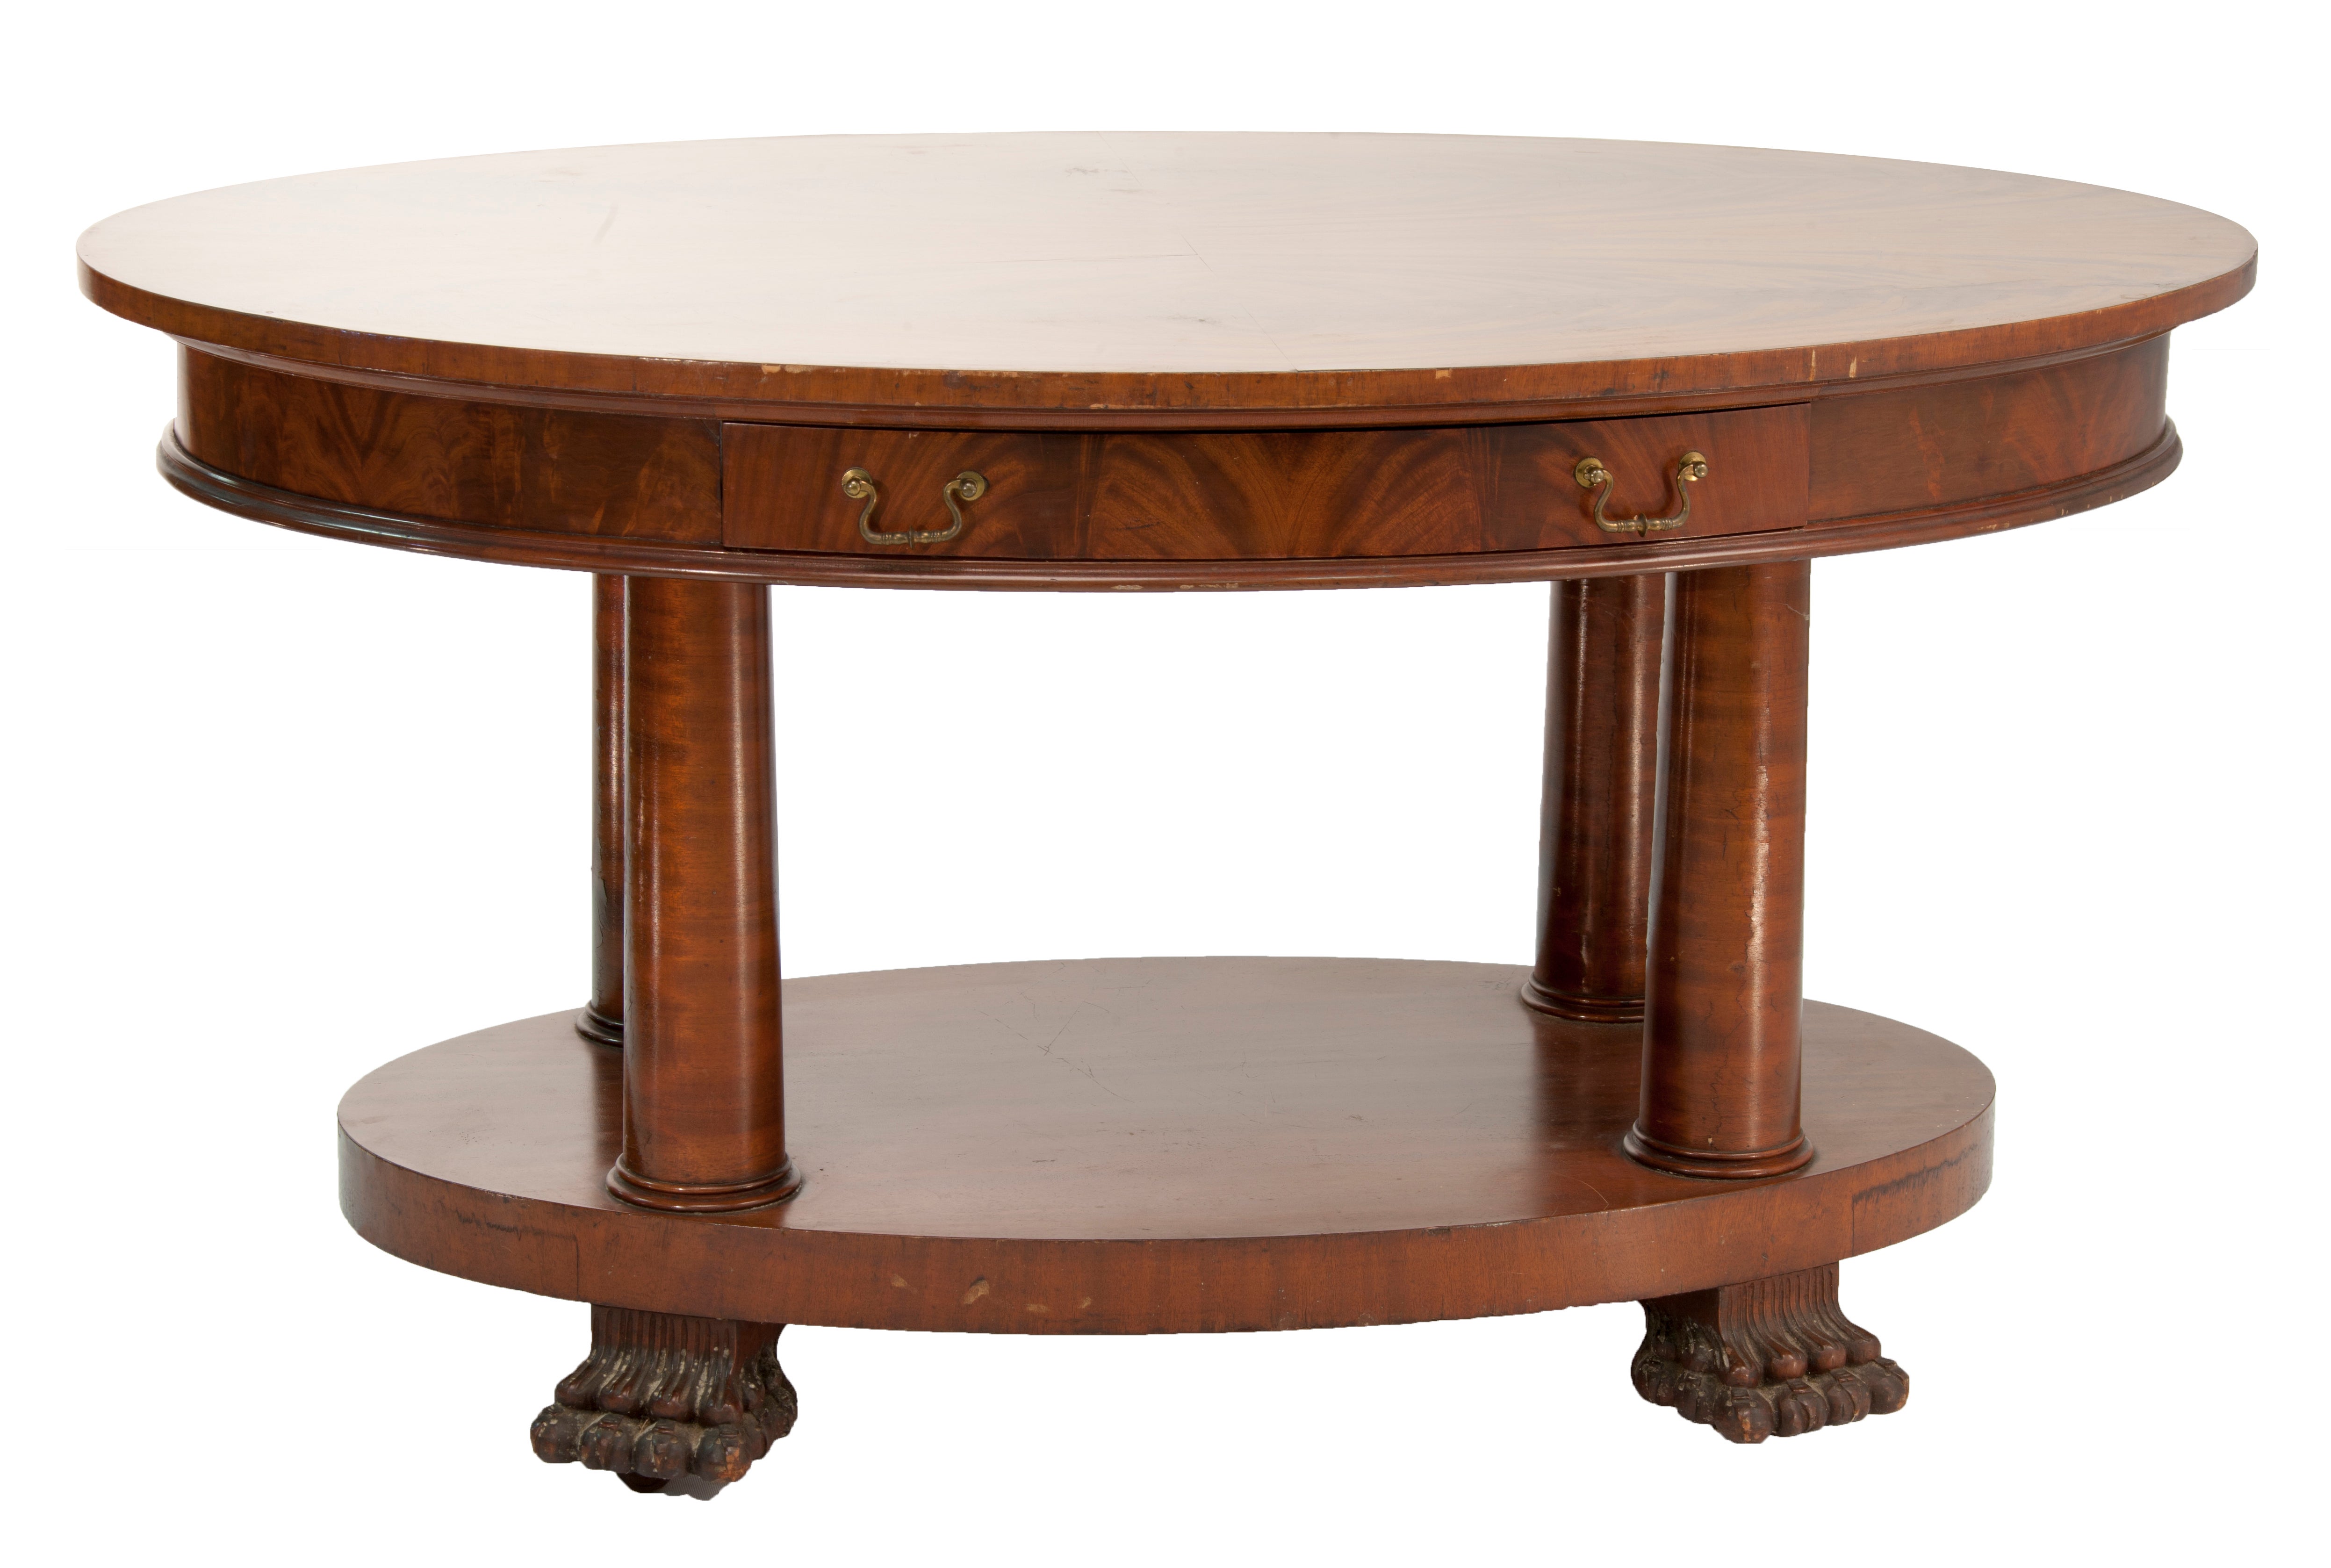 Ovaler Empire-Tisch mit Klauenfüßen und abgerundeten Schubladen